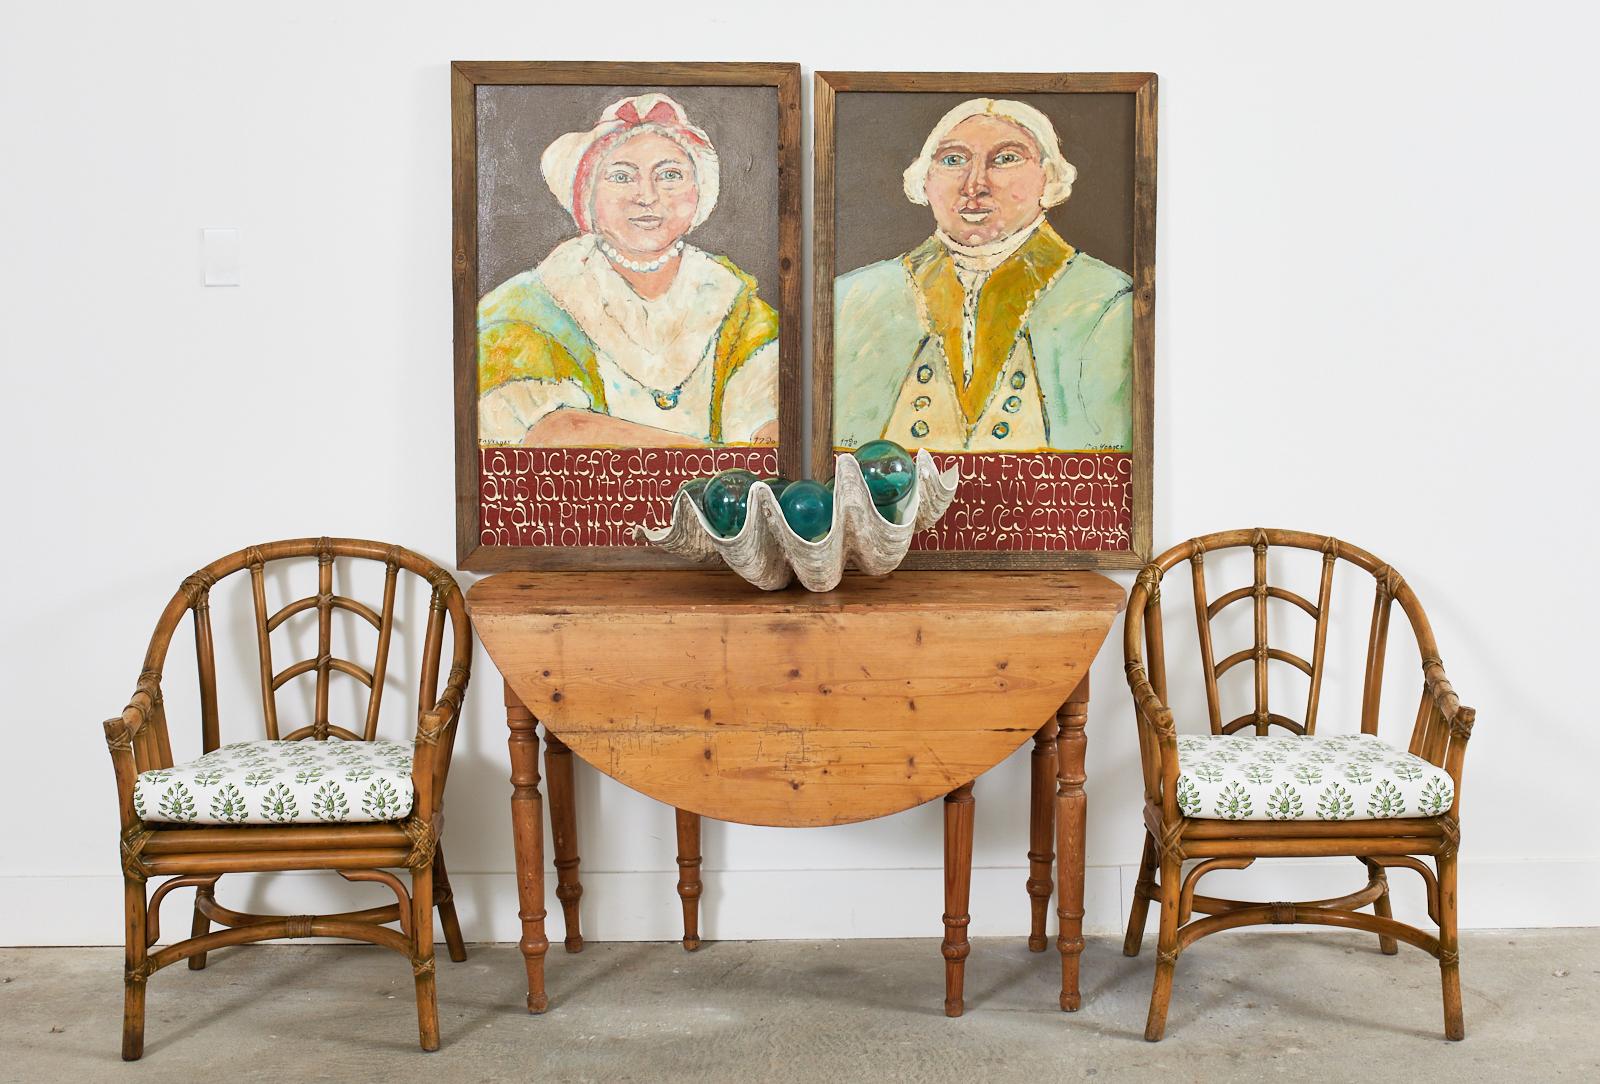 Rustikaler runder Esstisch oder Konsolentisch aus dem 19. Jahrhundert im französischen Landhausstil. Gefertigt aus Kiefernholz mit einer warmen Patina und einem schön gealterten und beschädigten Finish. Der Tisch misst 18,5 Zoll breit mit den